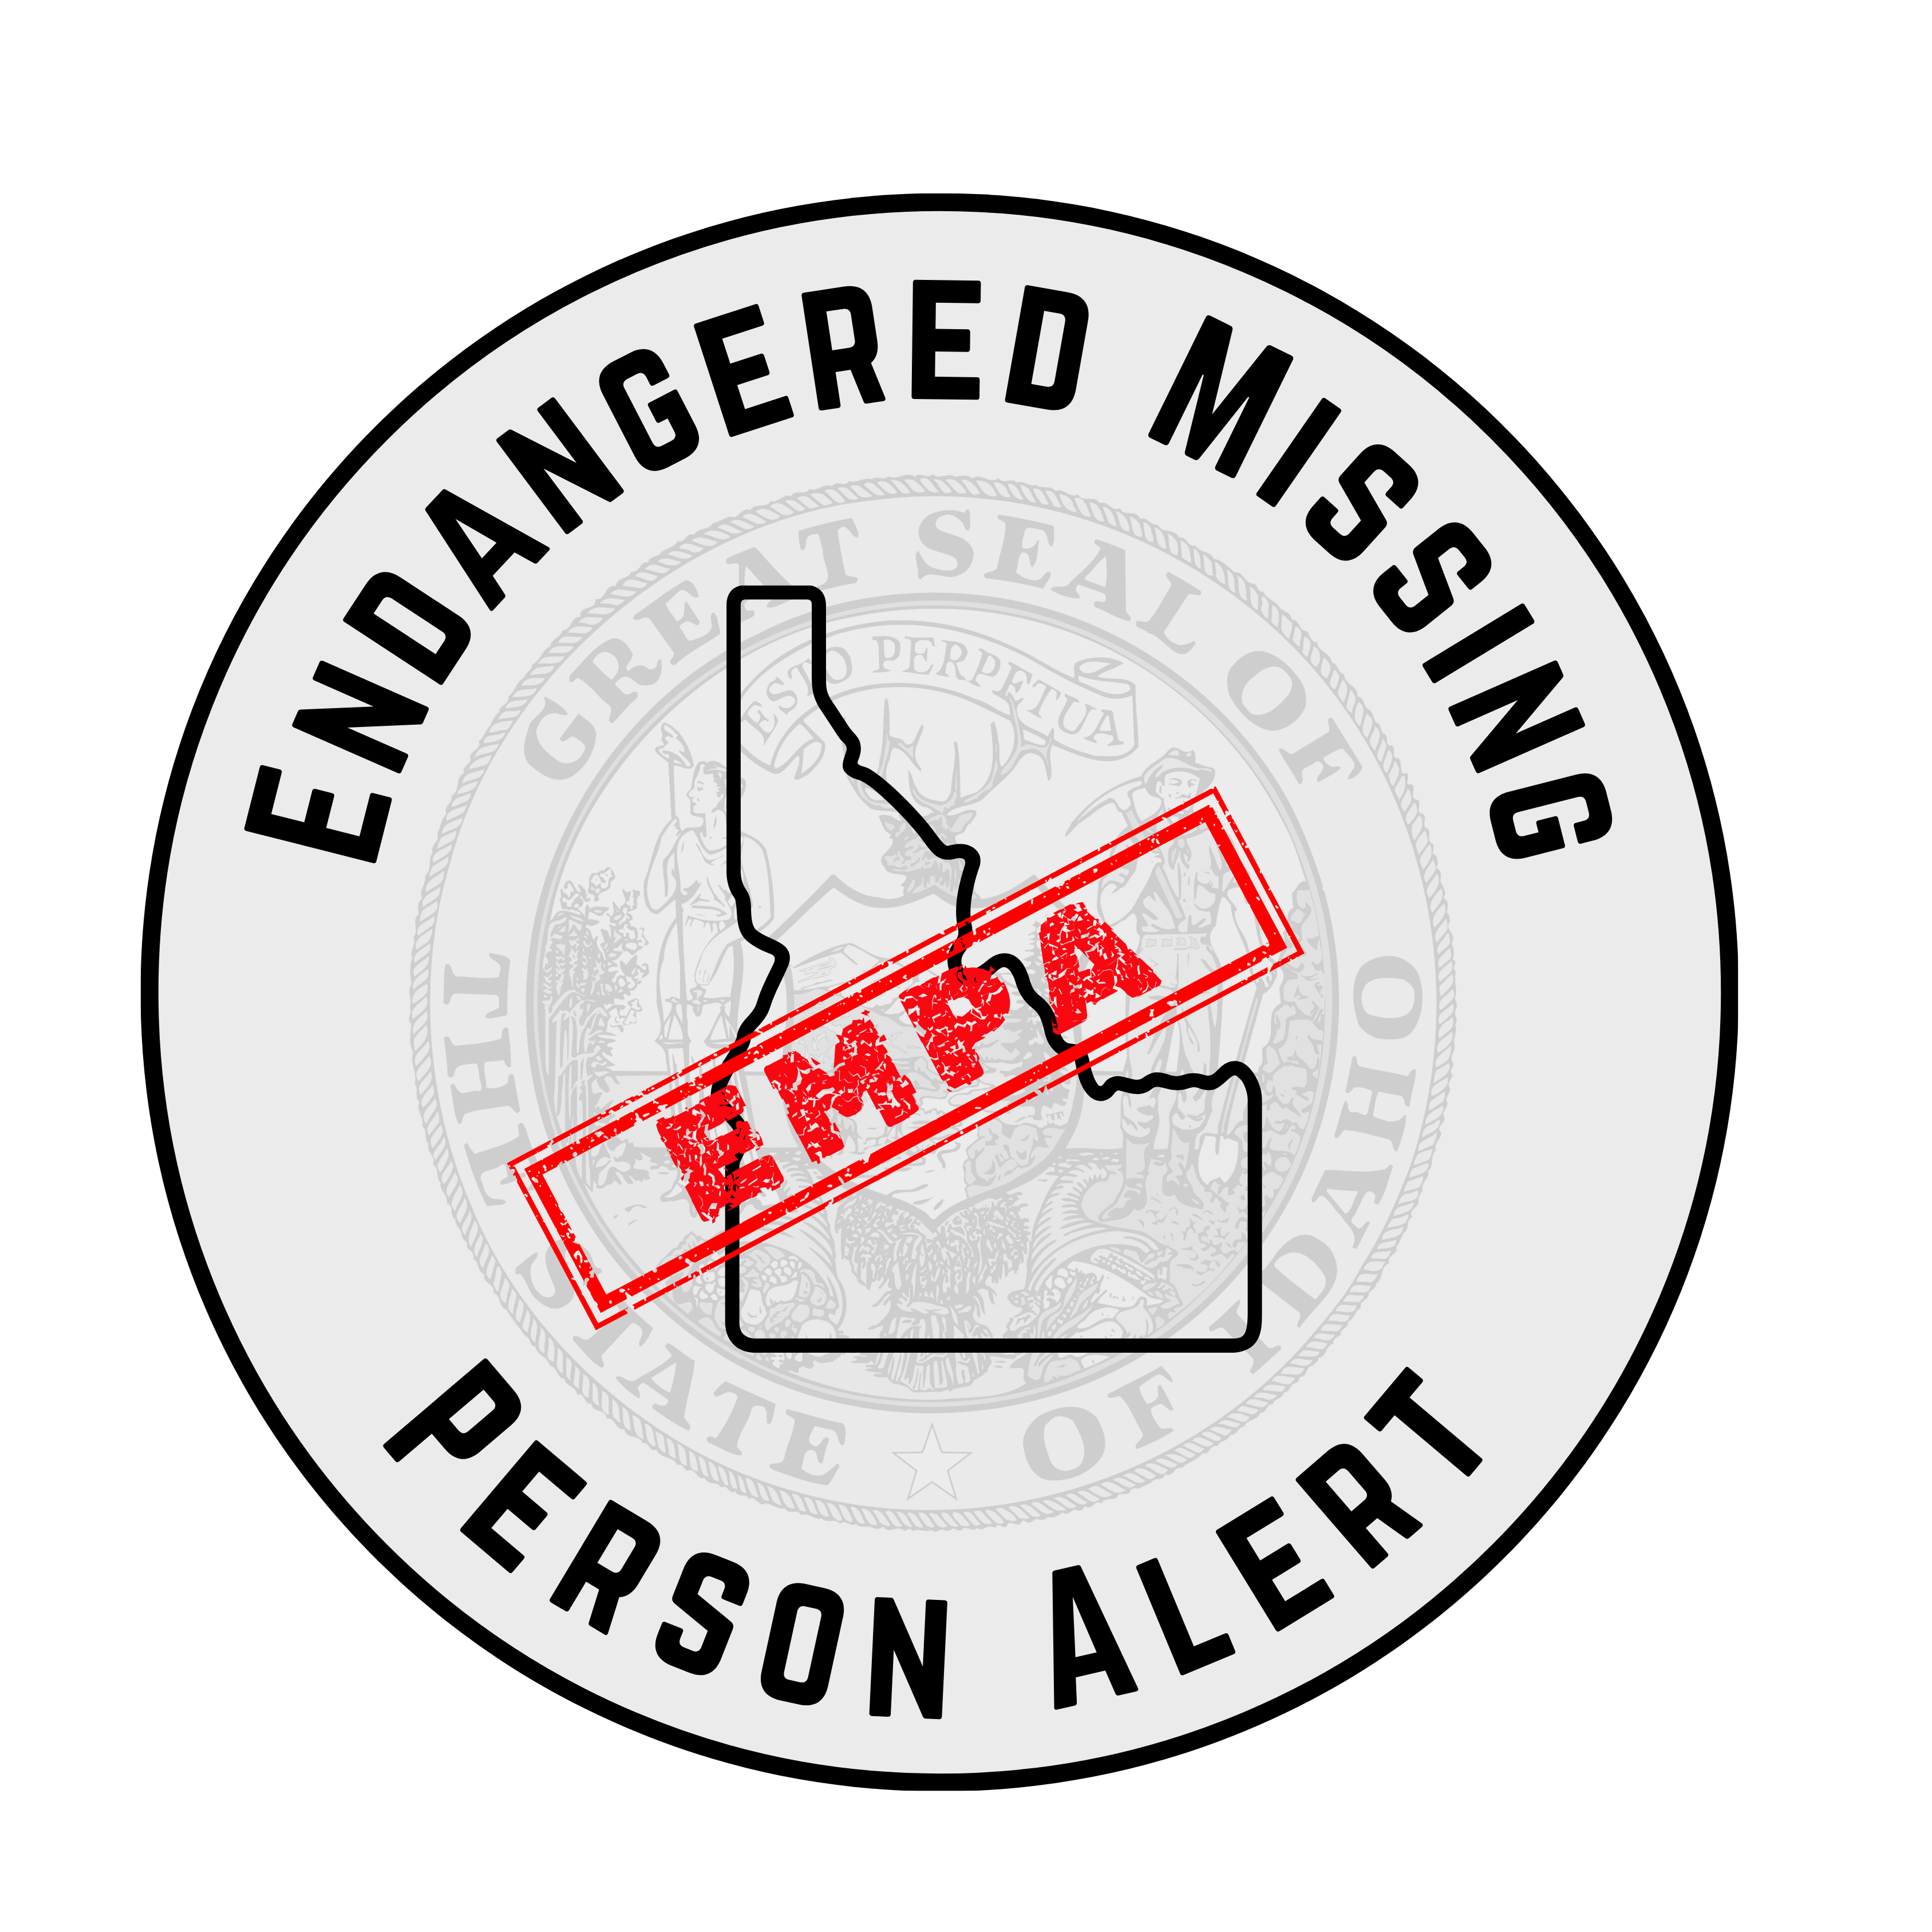 Endangered Missing Person Alert logo - Large